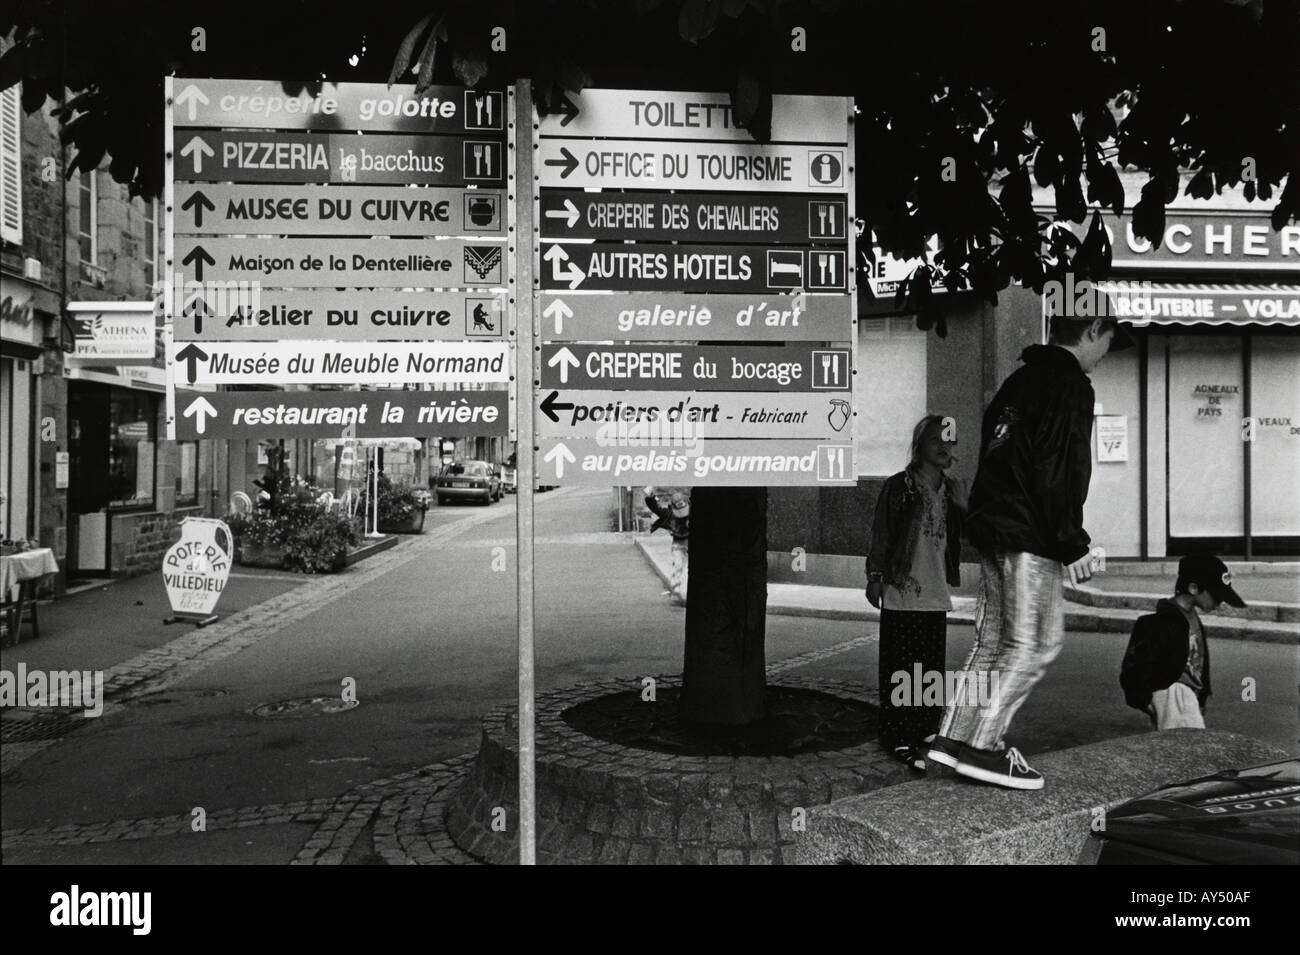 En blanco y negro de varios restaurante del hotel y el museo signos en una ciudad francesa Foto de stock